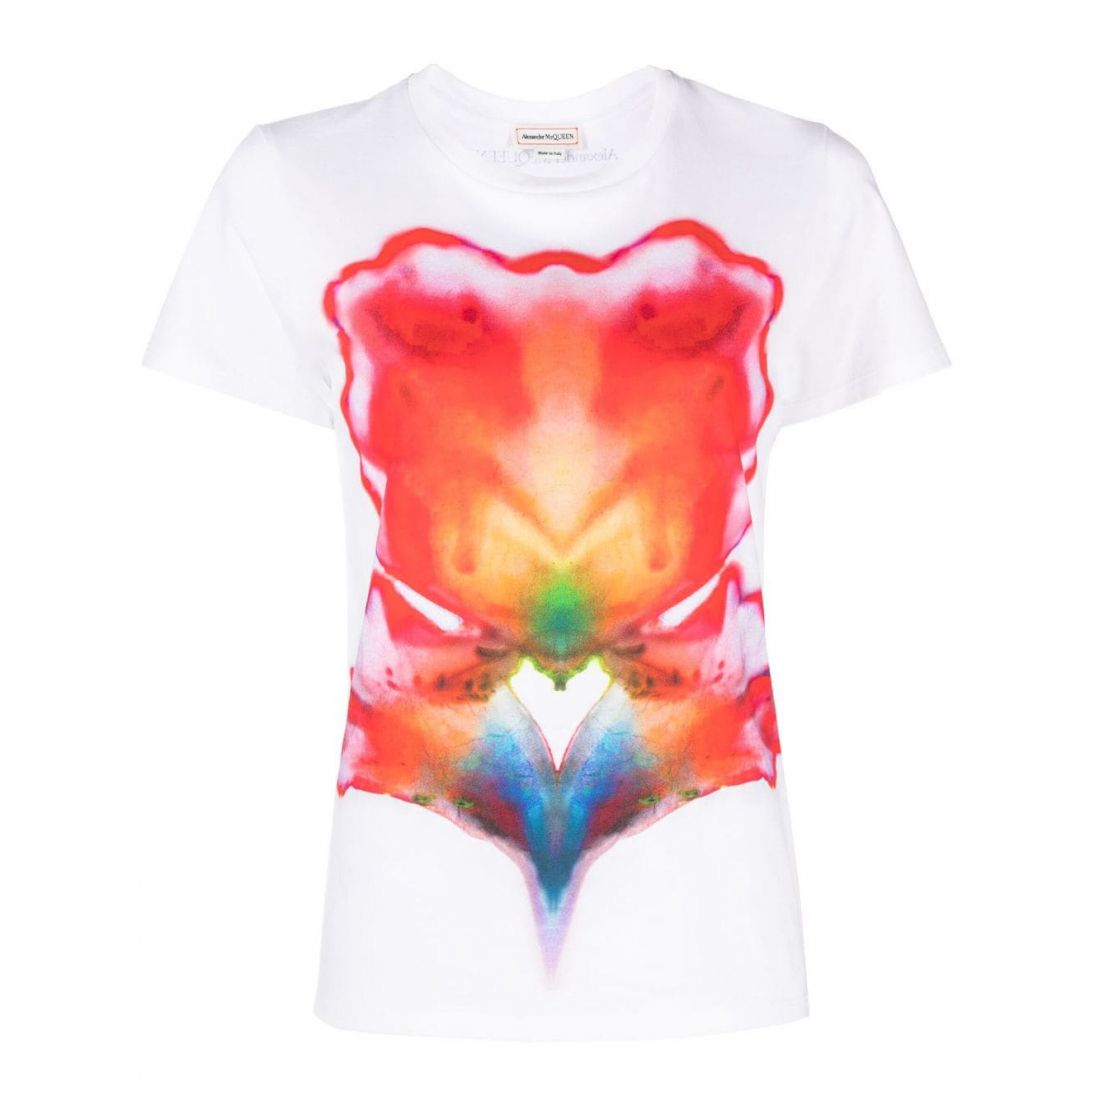 Alexander McQueen - T-shirt 'Abstract' pour Femmes